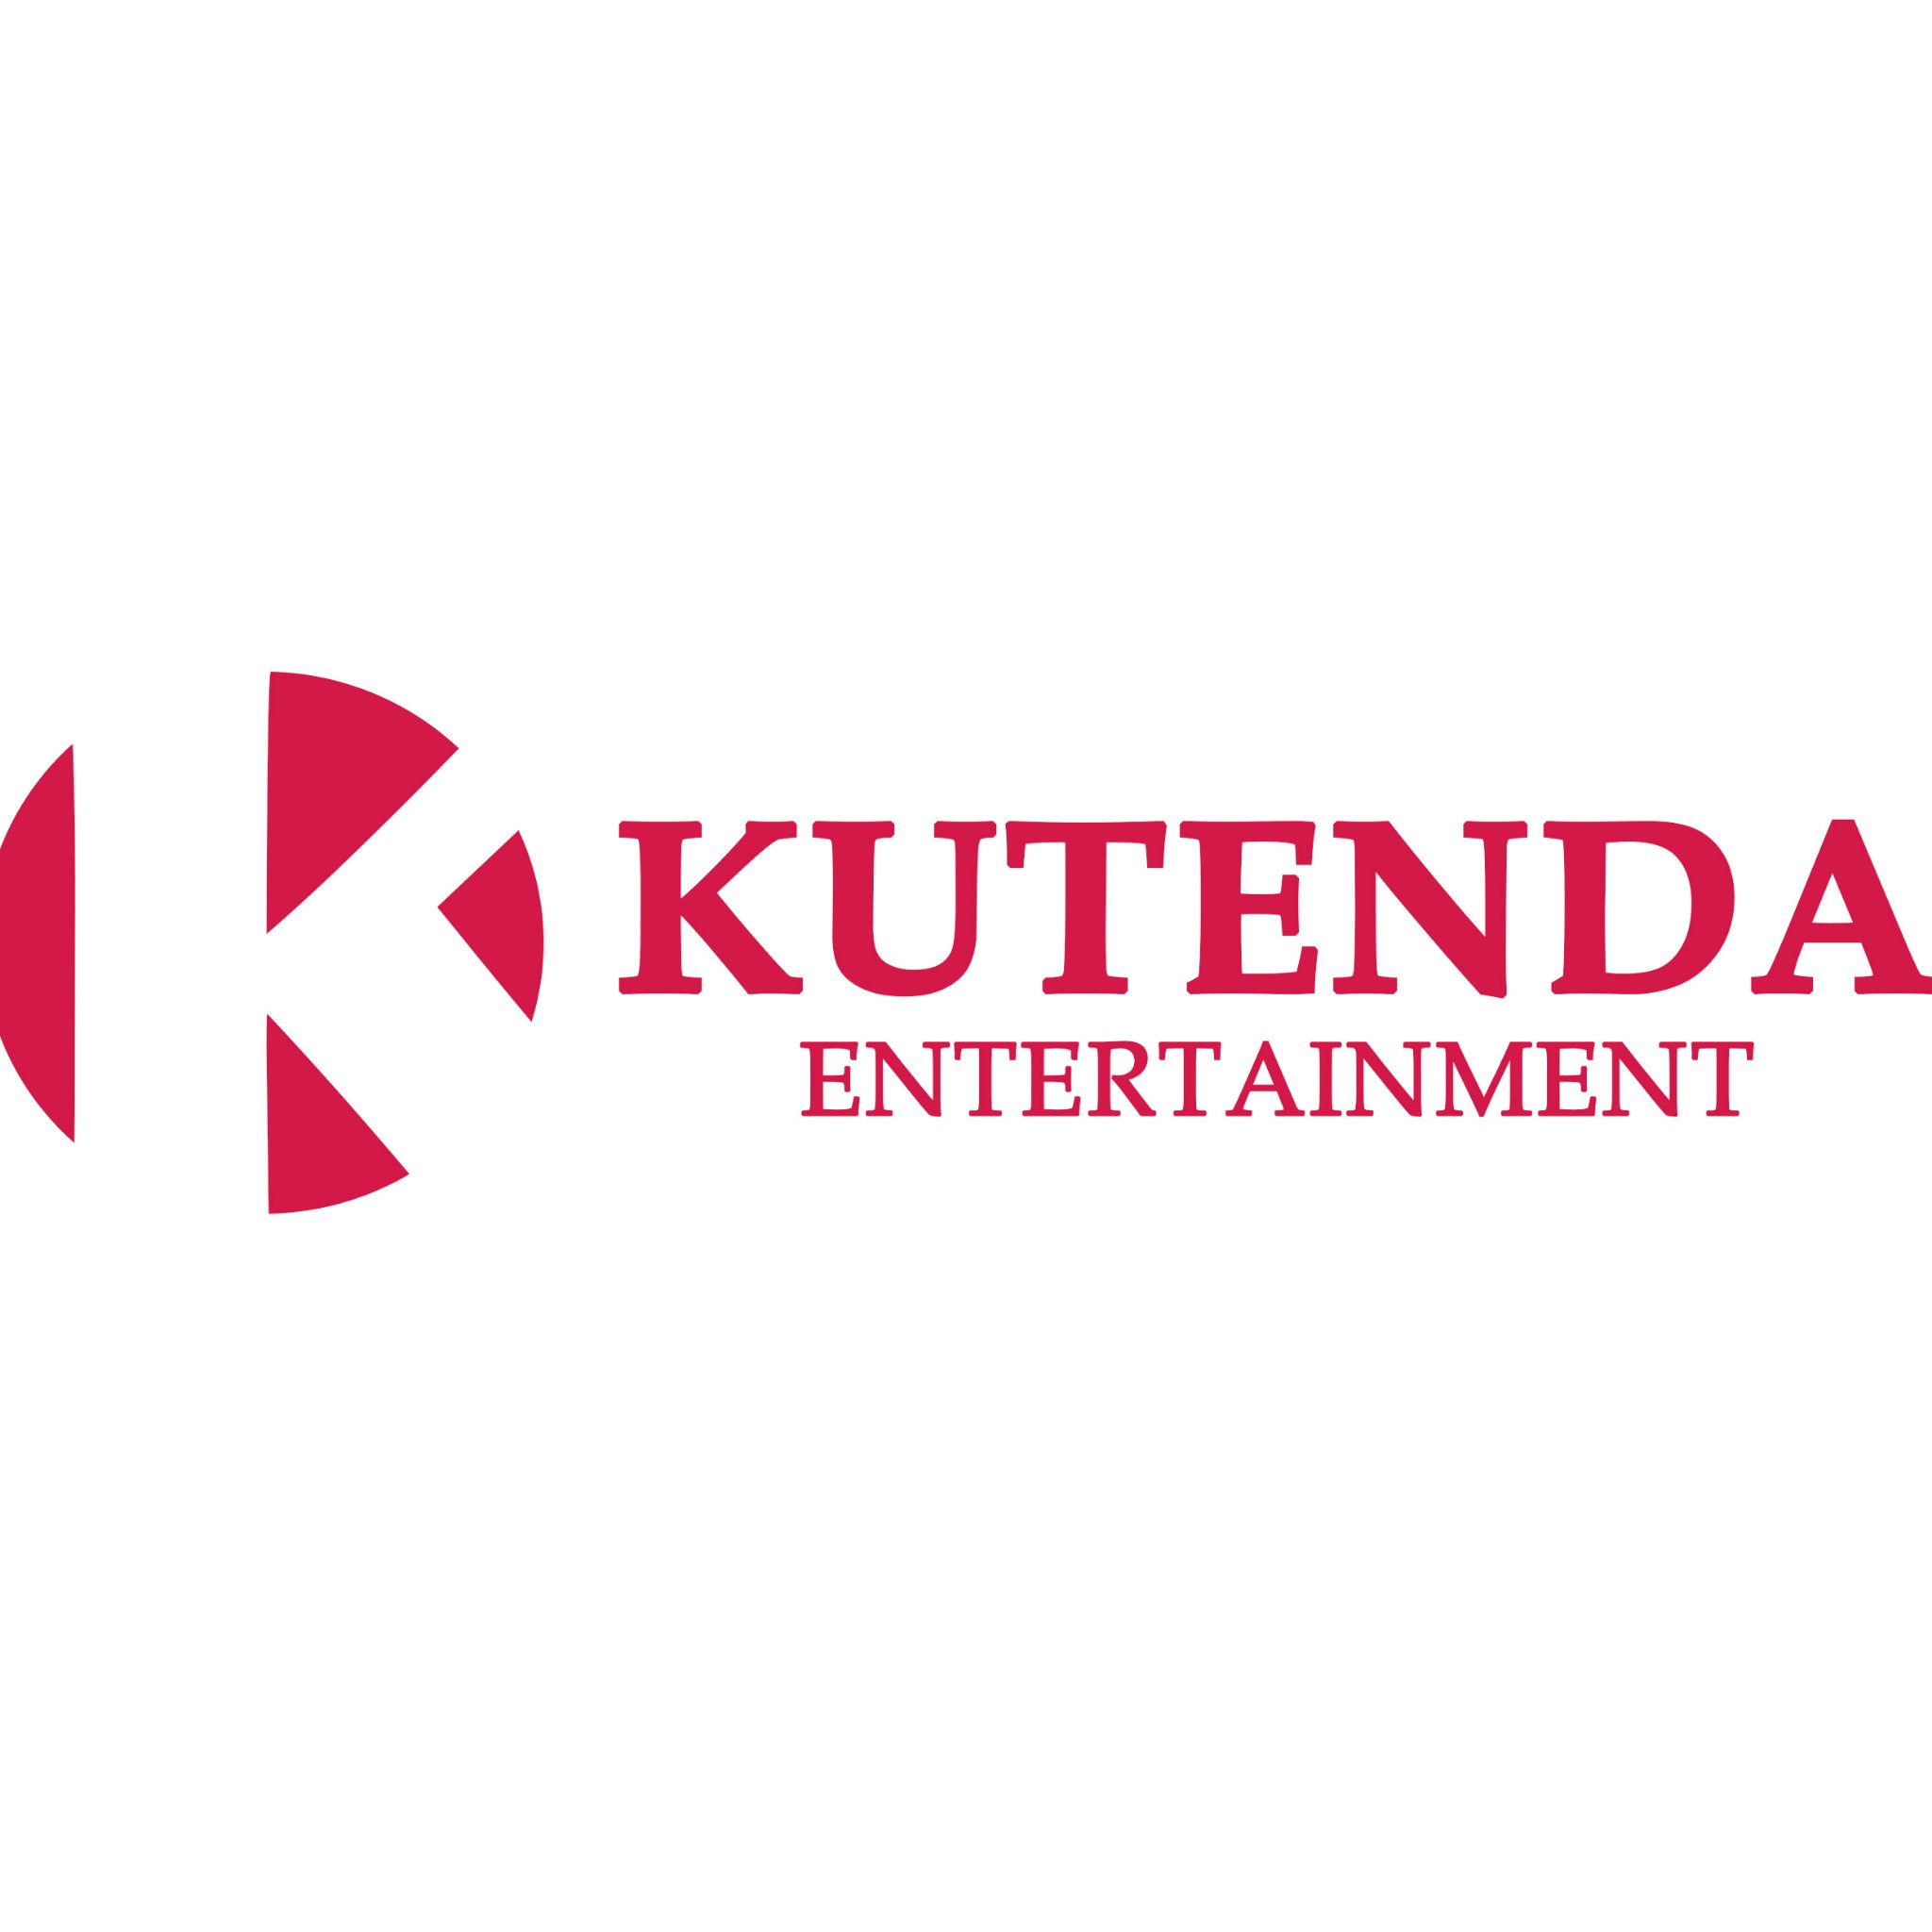 A division of Kutenda Group✨Enquiries:info@kutendagroup.com